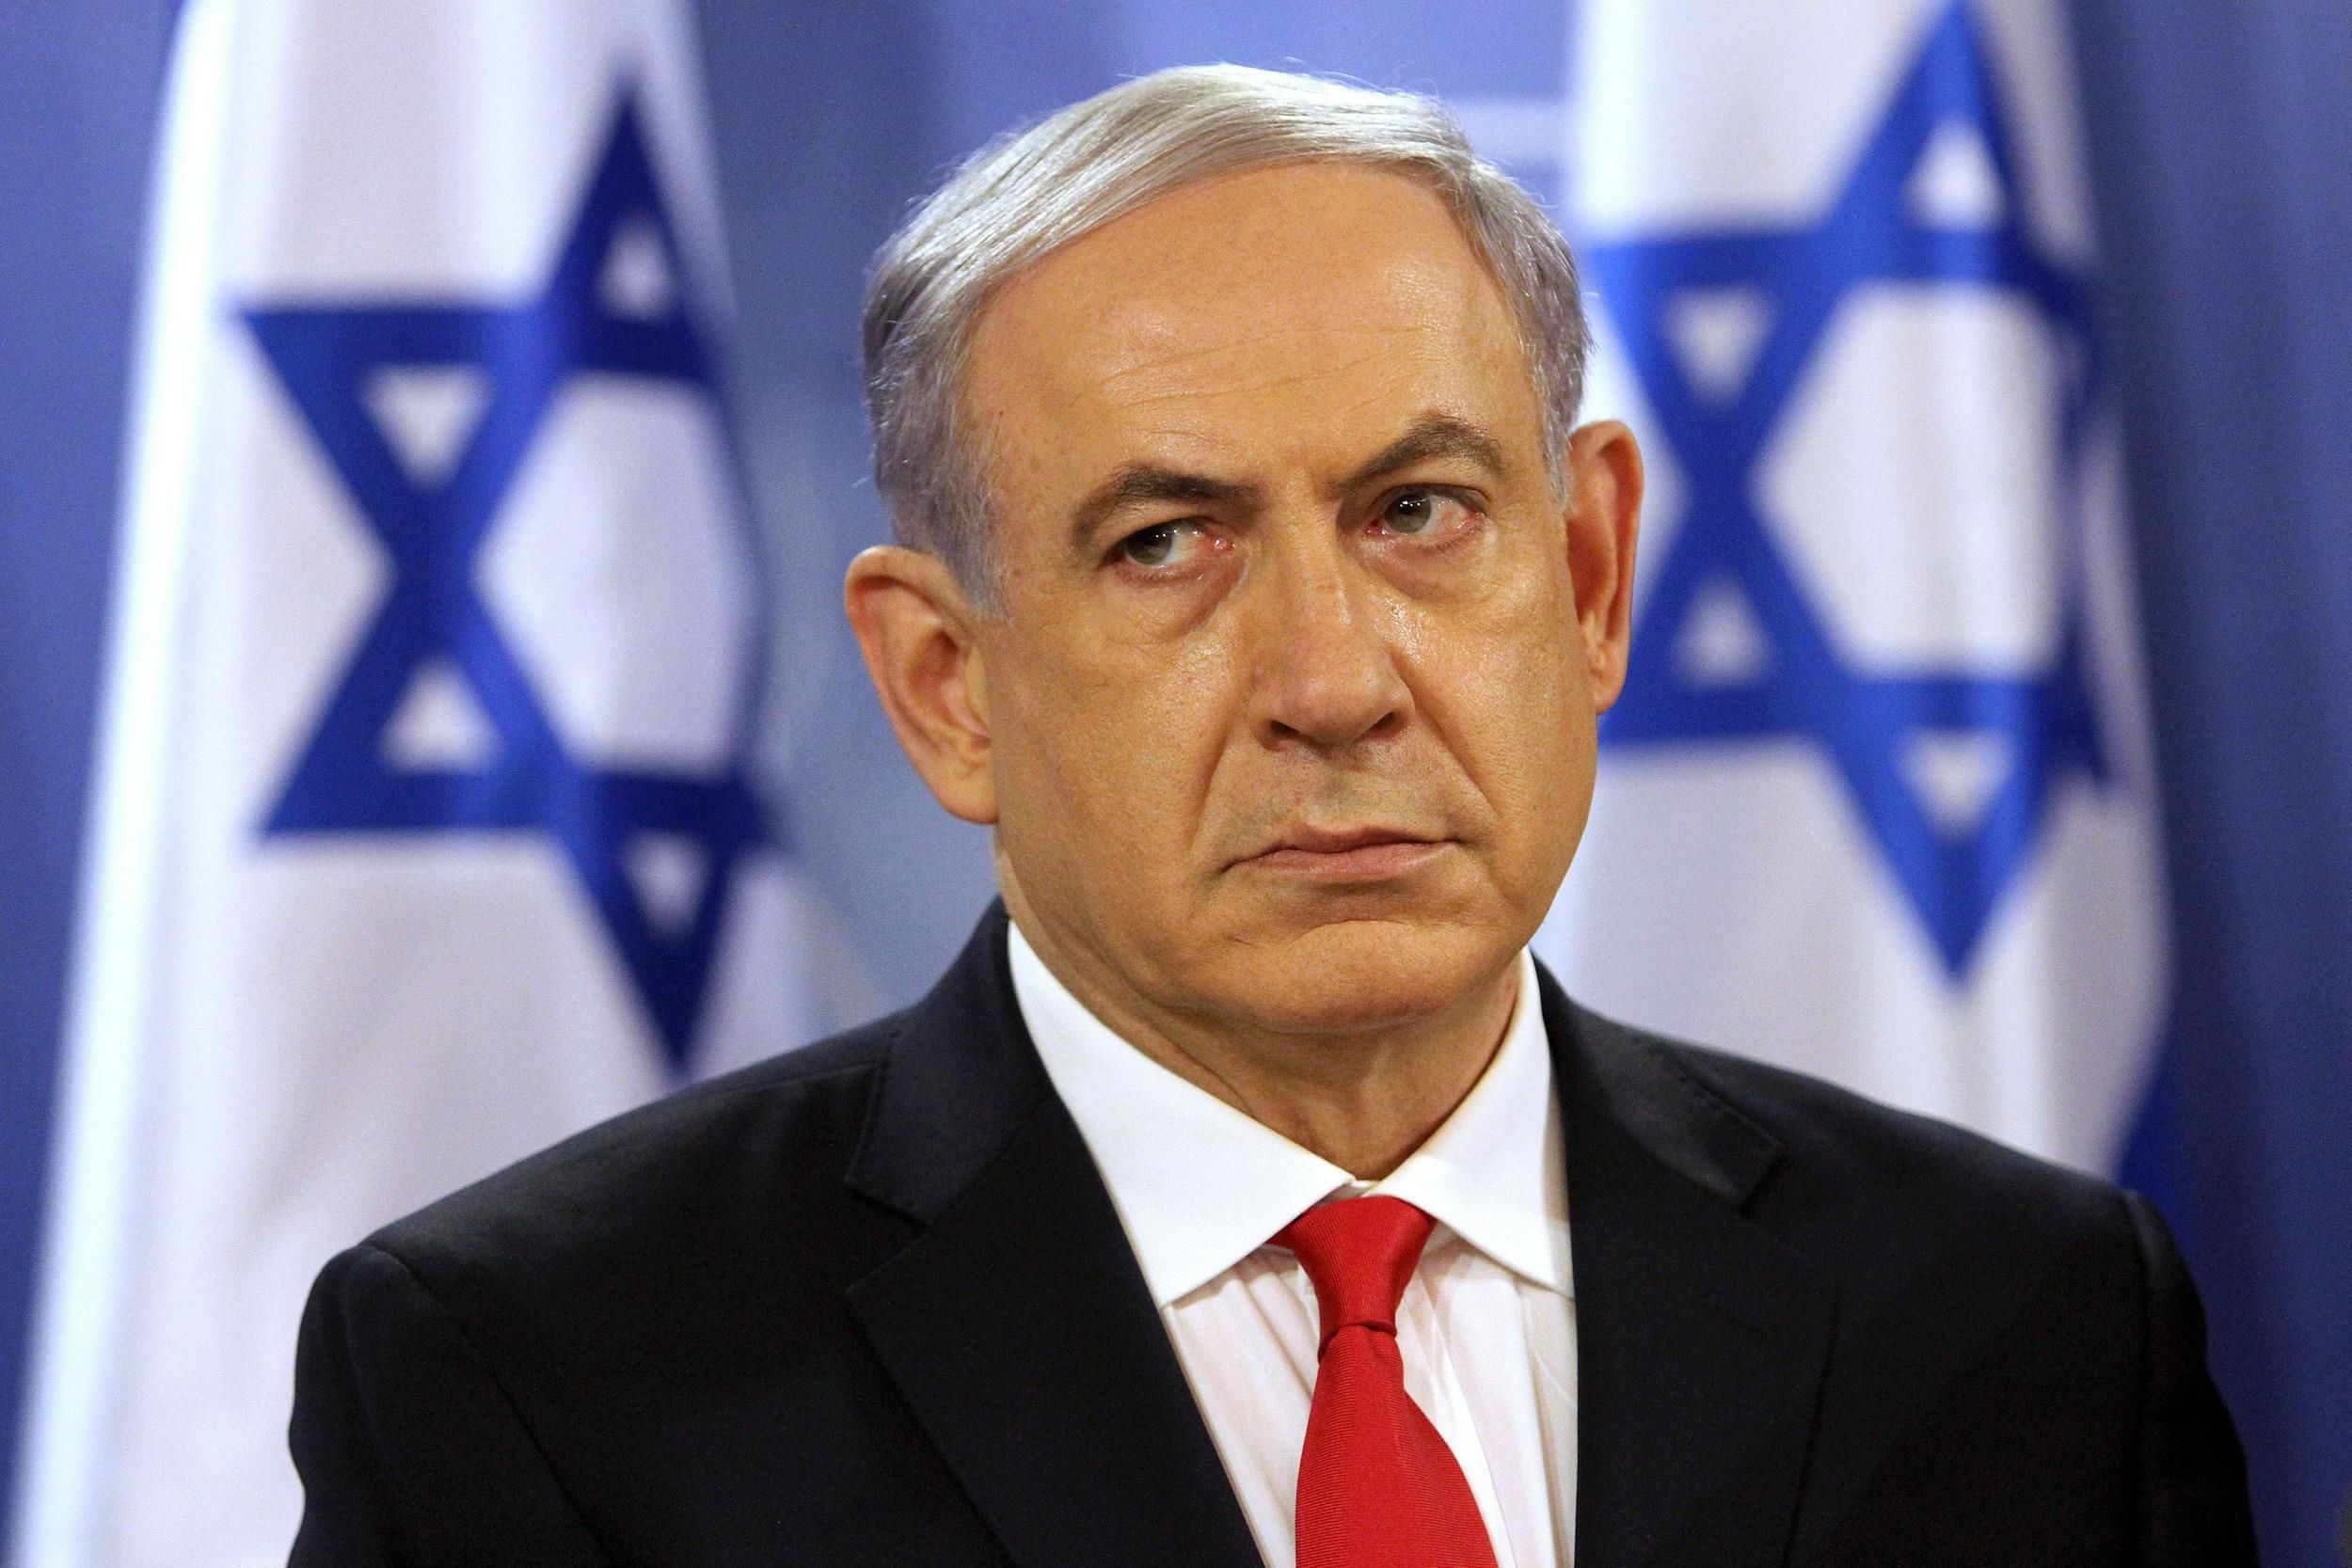 واکنش نتانیاهو به کاهش تعهدات برجامی ایران